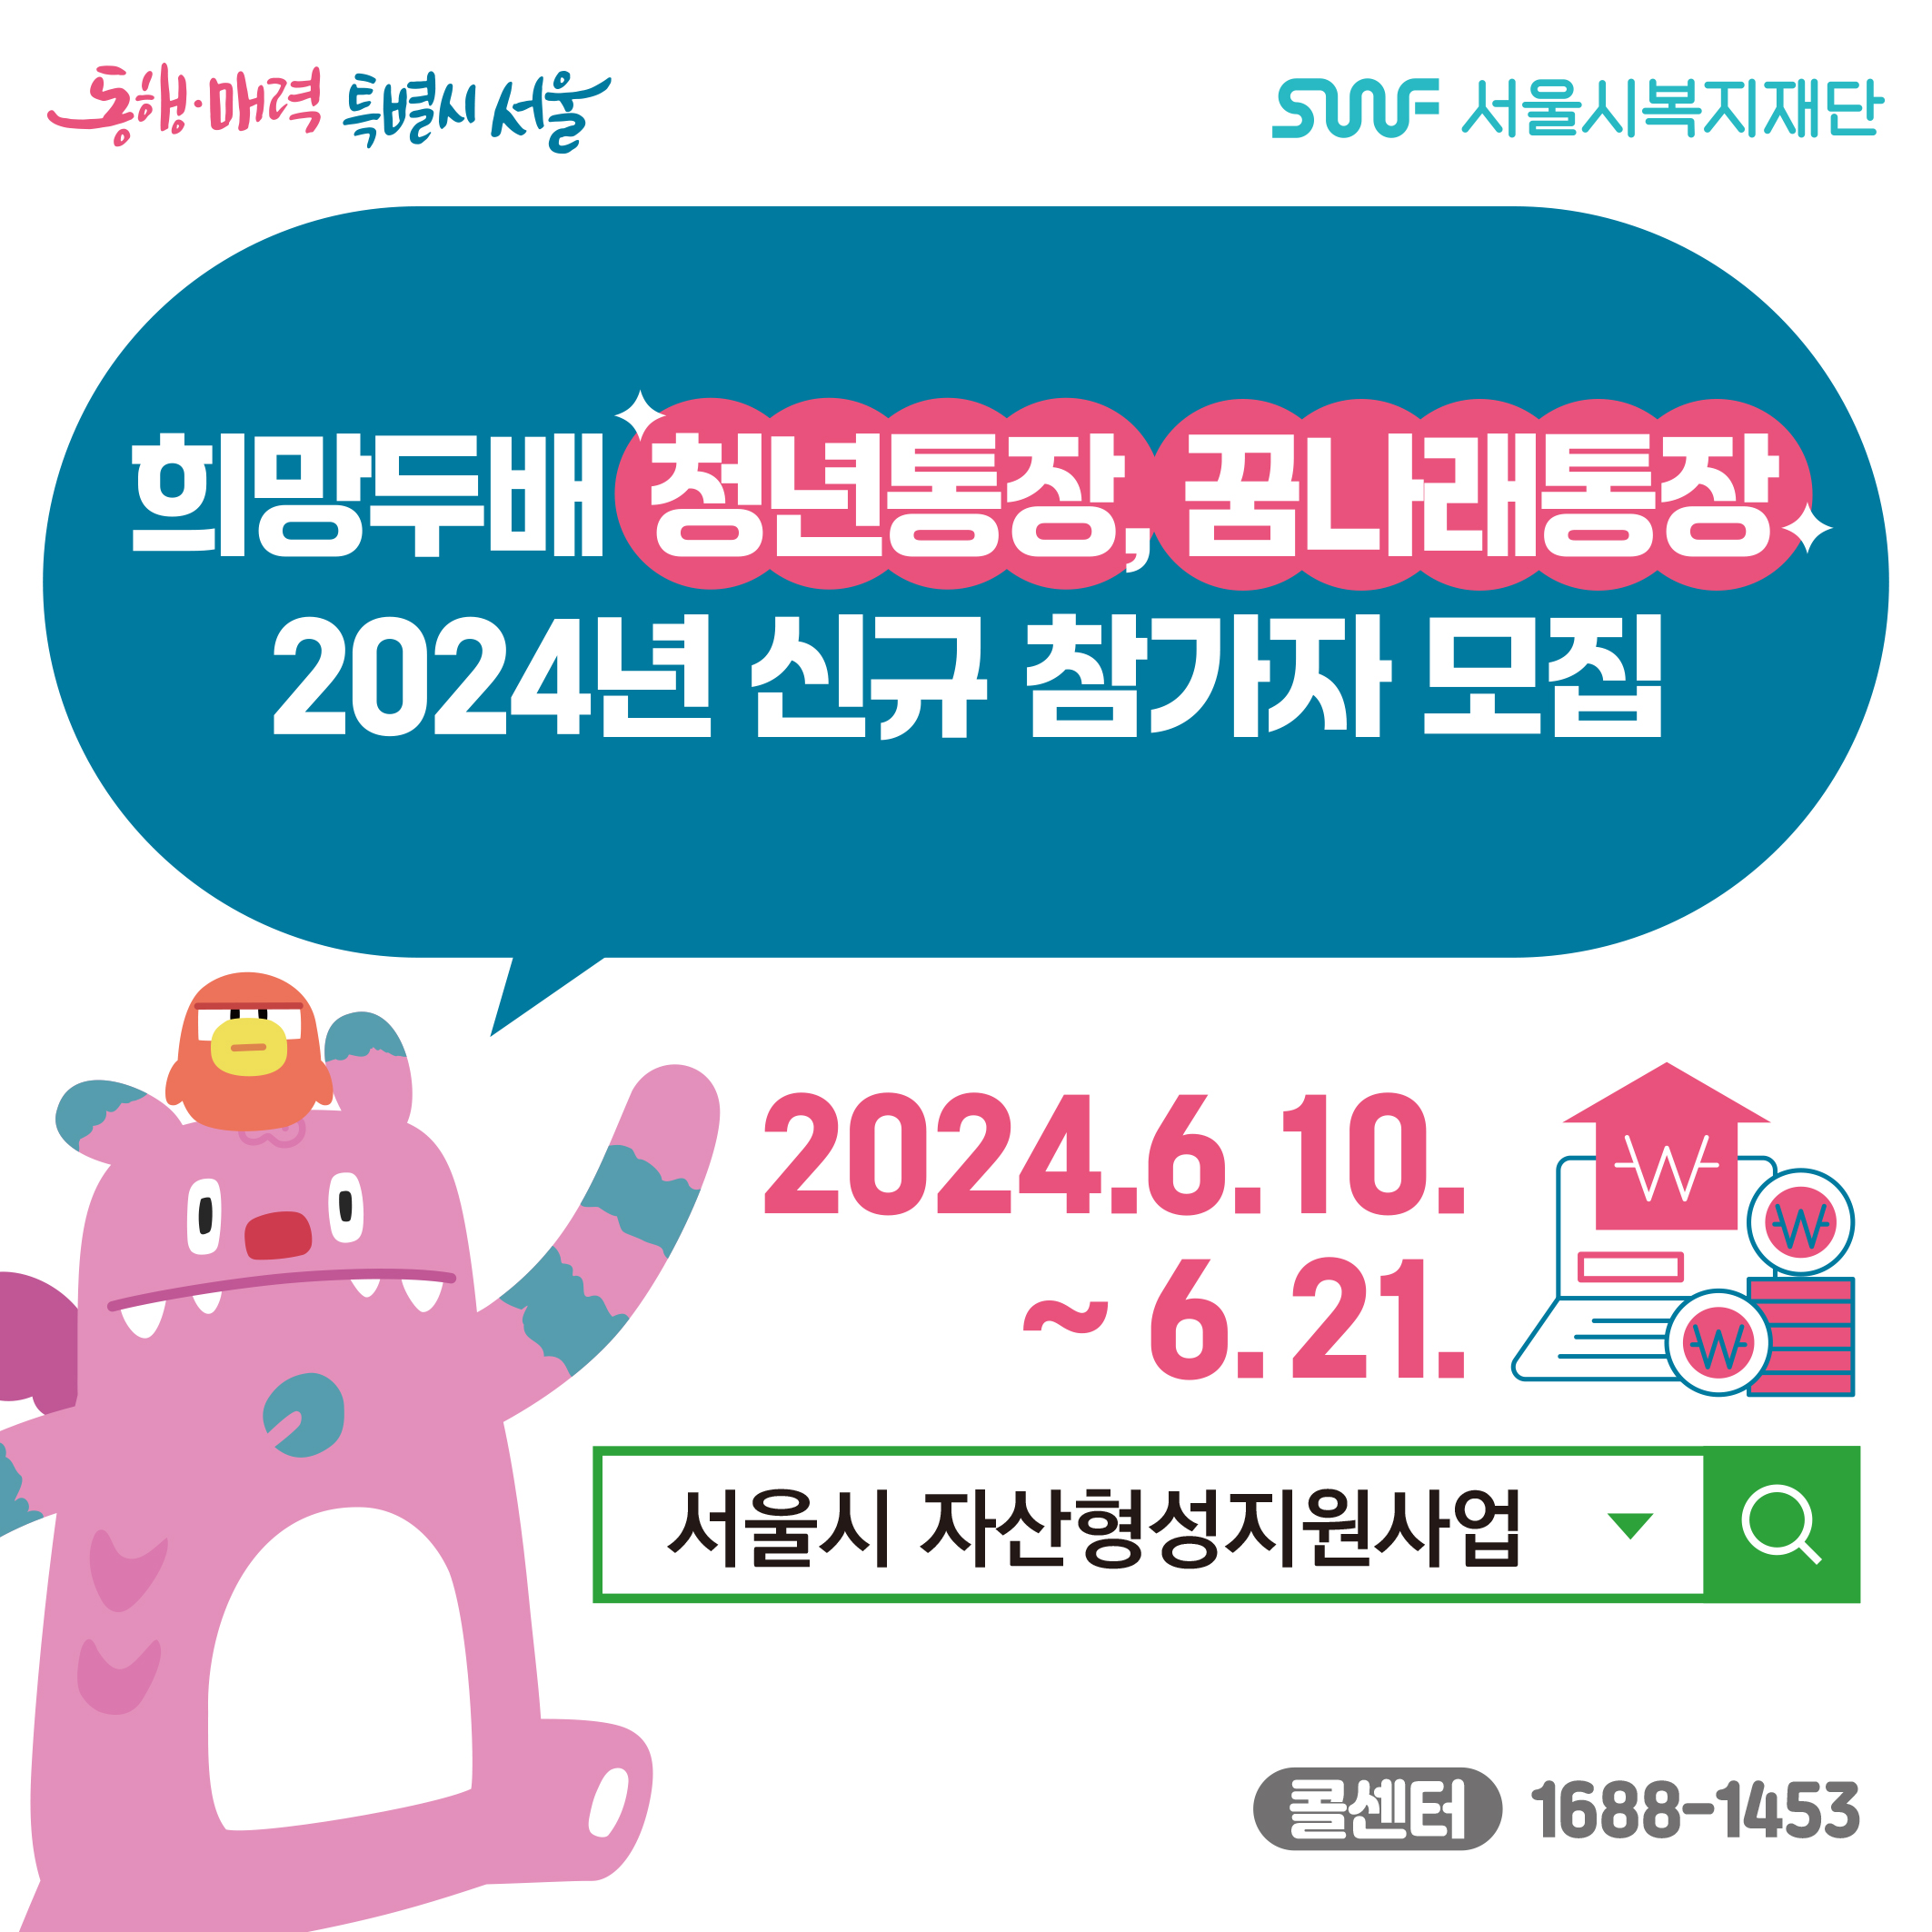 희망두배청년통장, 꿈나래통장.2024년 신규 참가자 모집